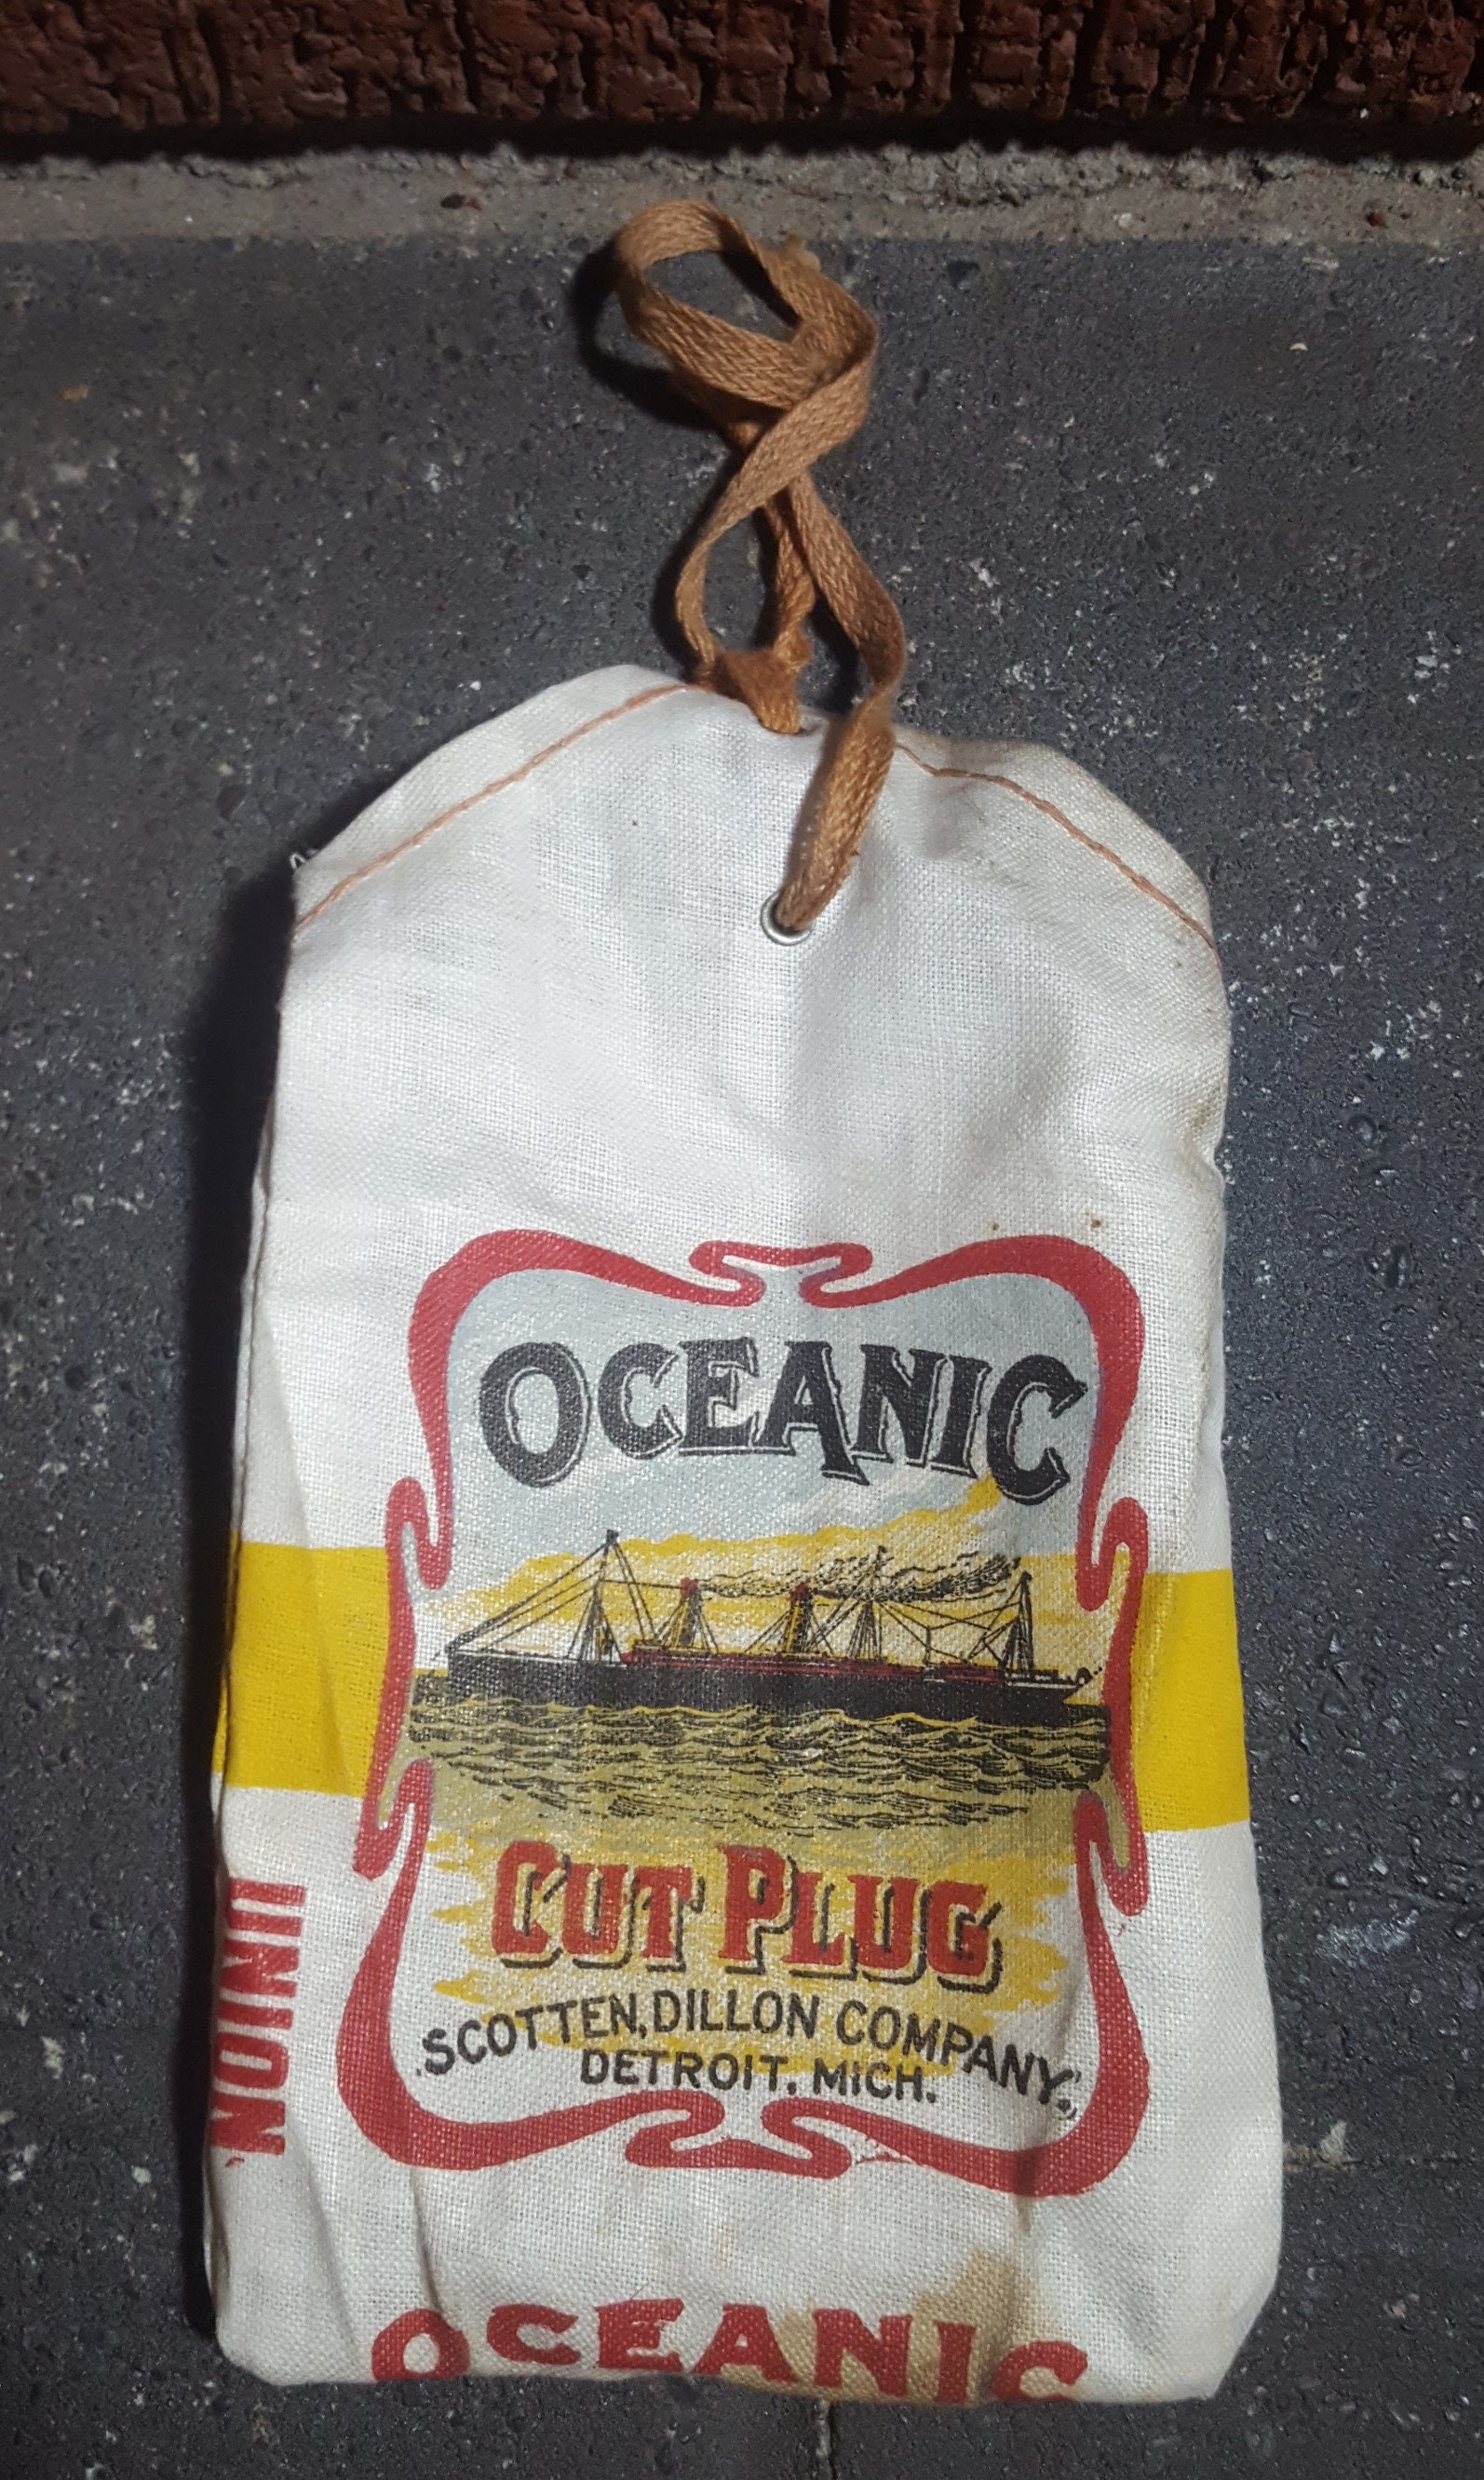 3-Vintage Original OCEANIC Cut Plug Tobacco Bag Pouch Scotten Dillon Detroit 